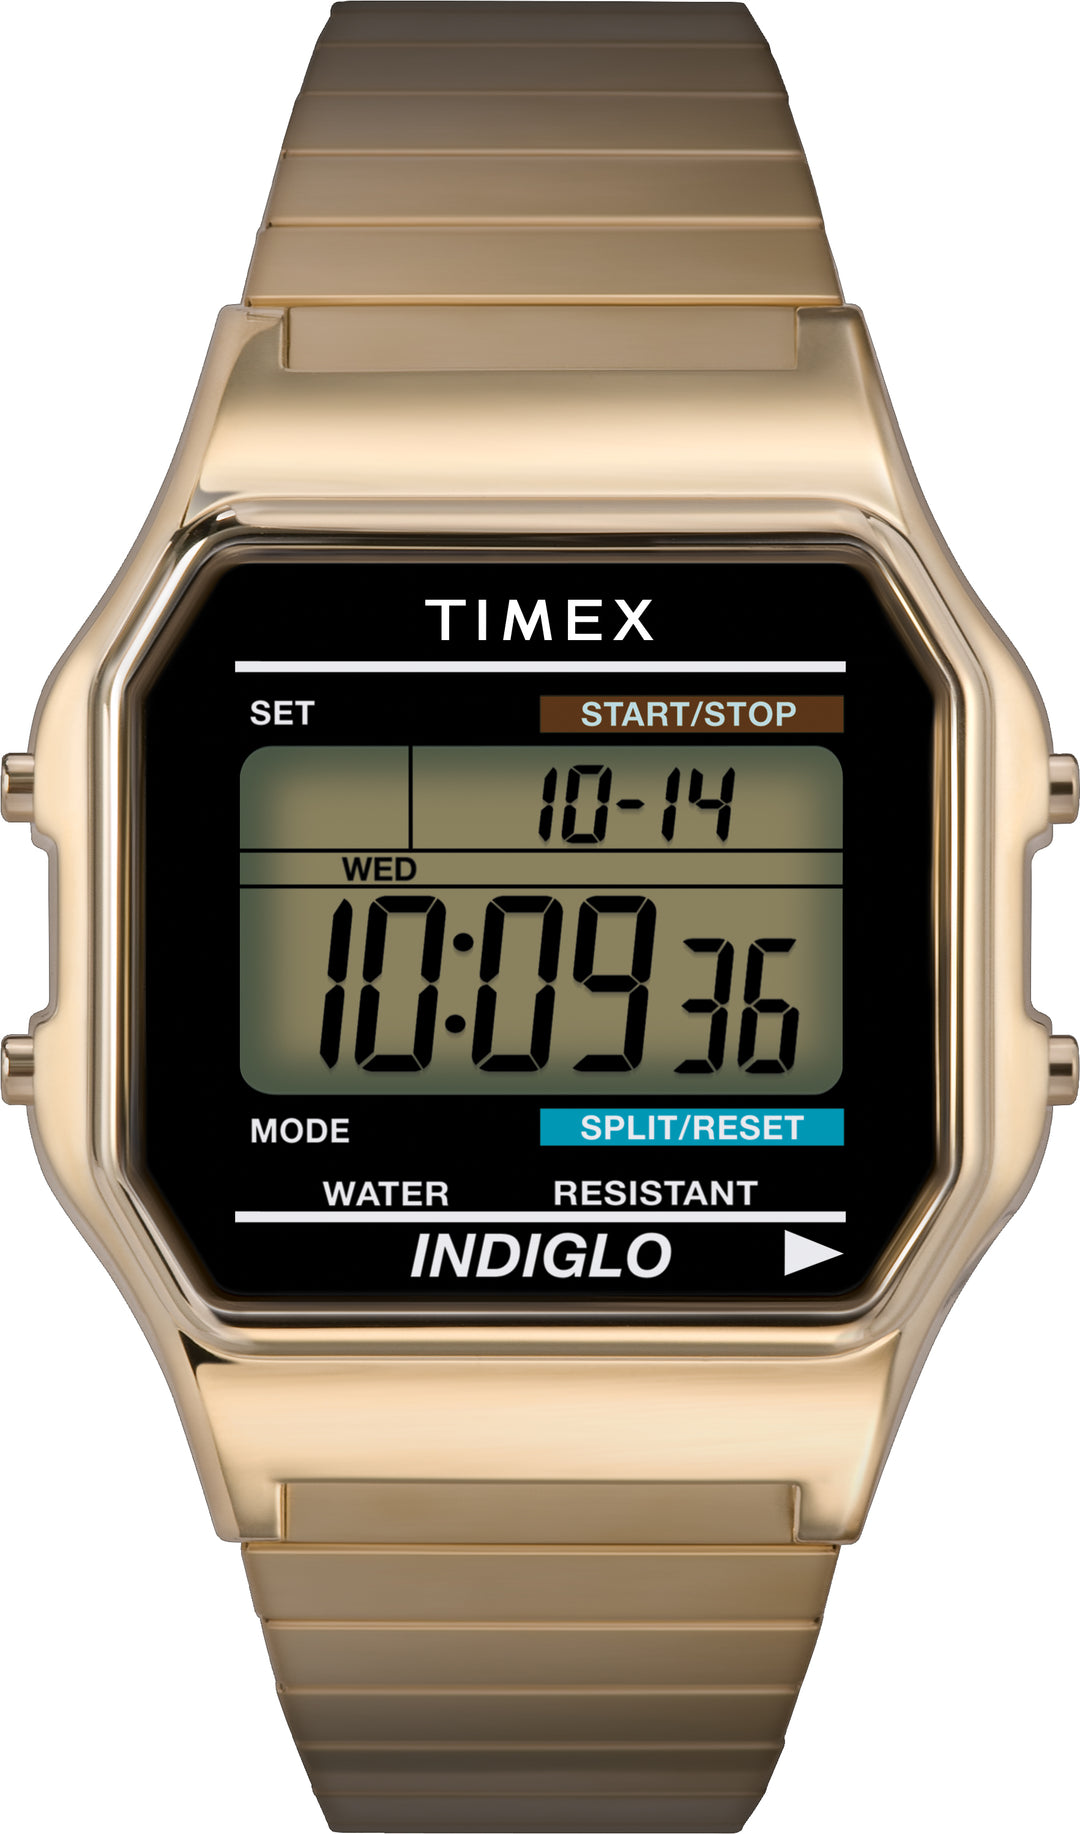 Timex digital watch featuring